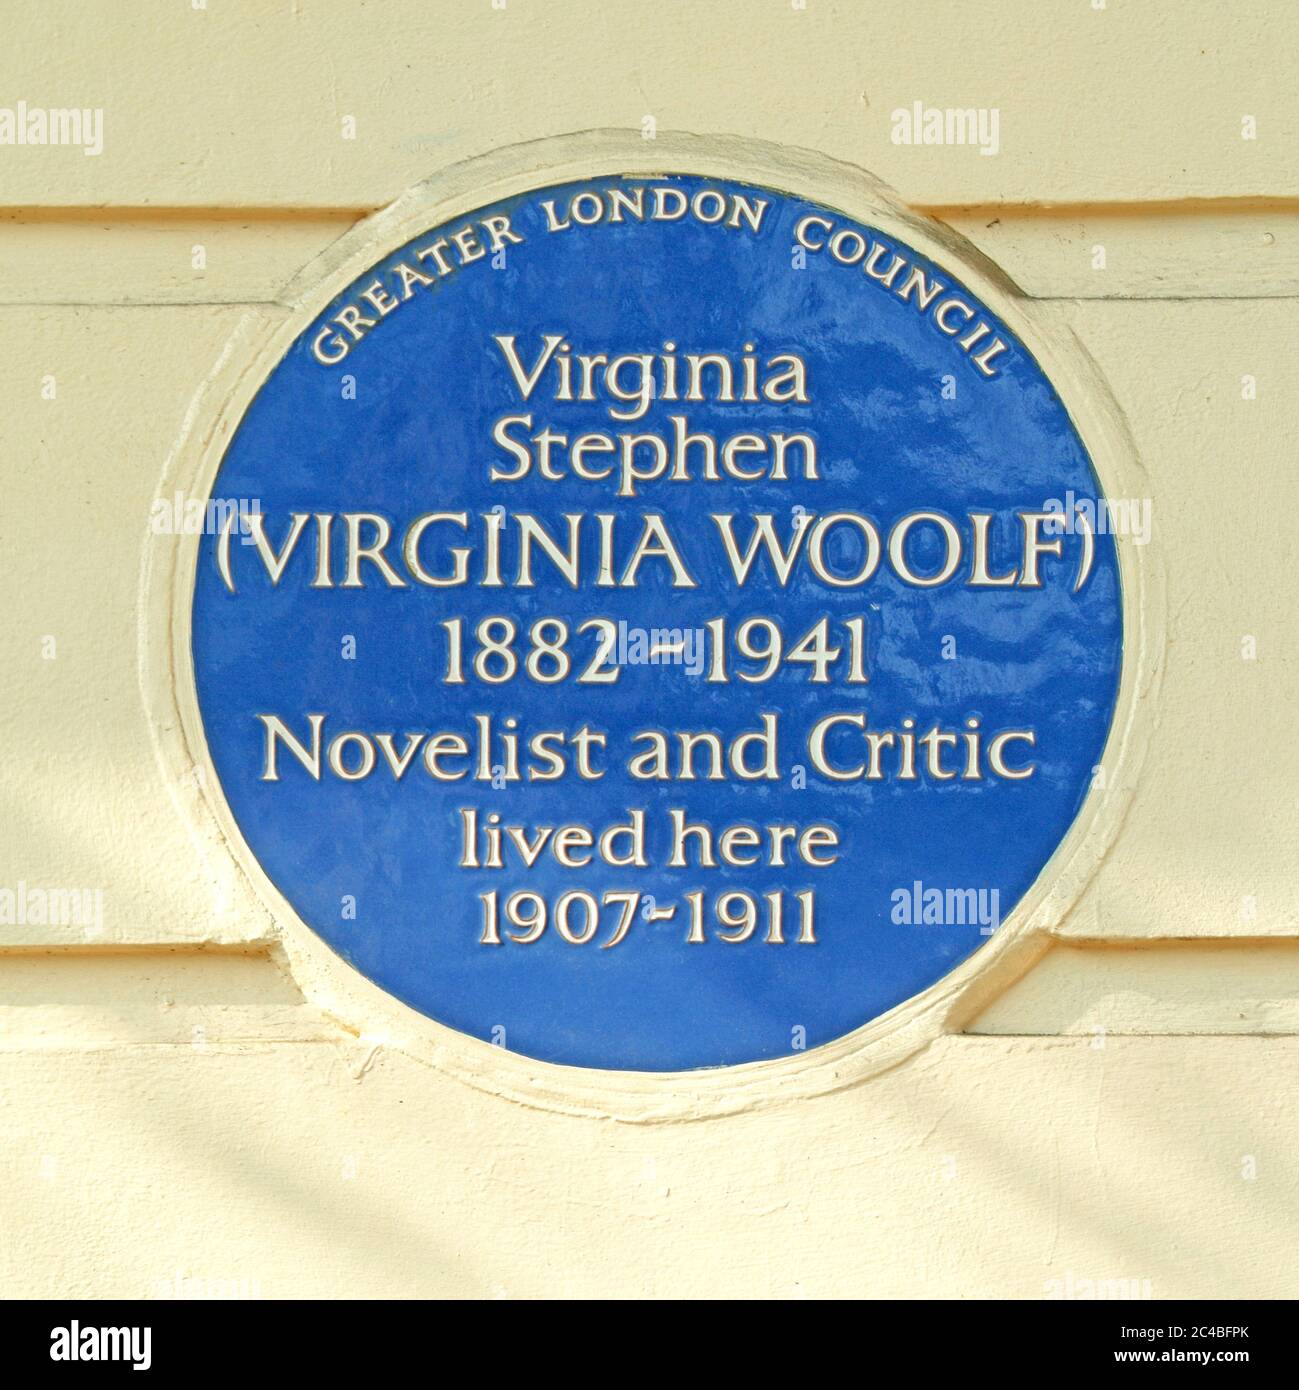 Historische blaue Informationstafel an einem Robert Adams Gebäude in Fitzroy Square Aufnahme besetzt von Virginia Stephen 1882 - 1941 London England Stockfoto